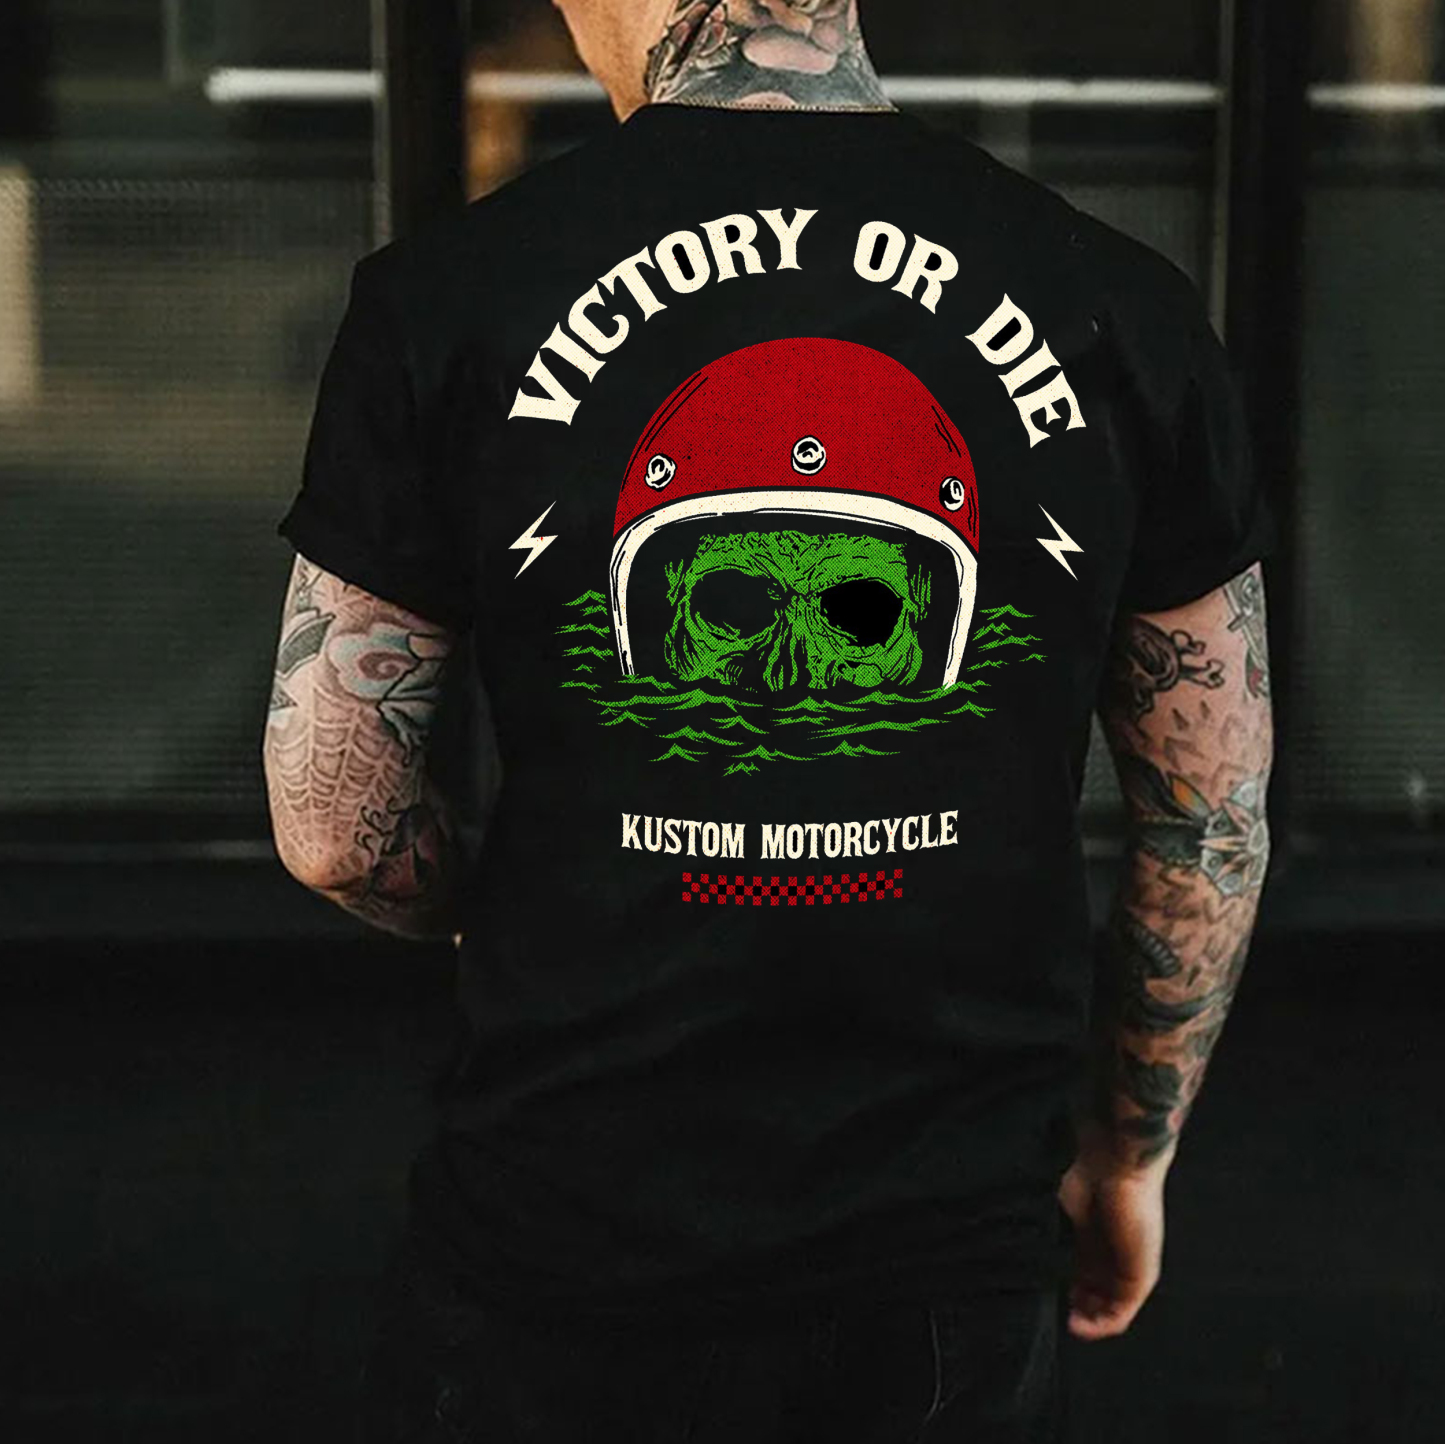 VICTORY OR DIE KUSTOM MOTORCYCLE Drowning Helmet Skull Print Men's T-shirt